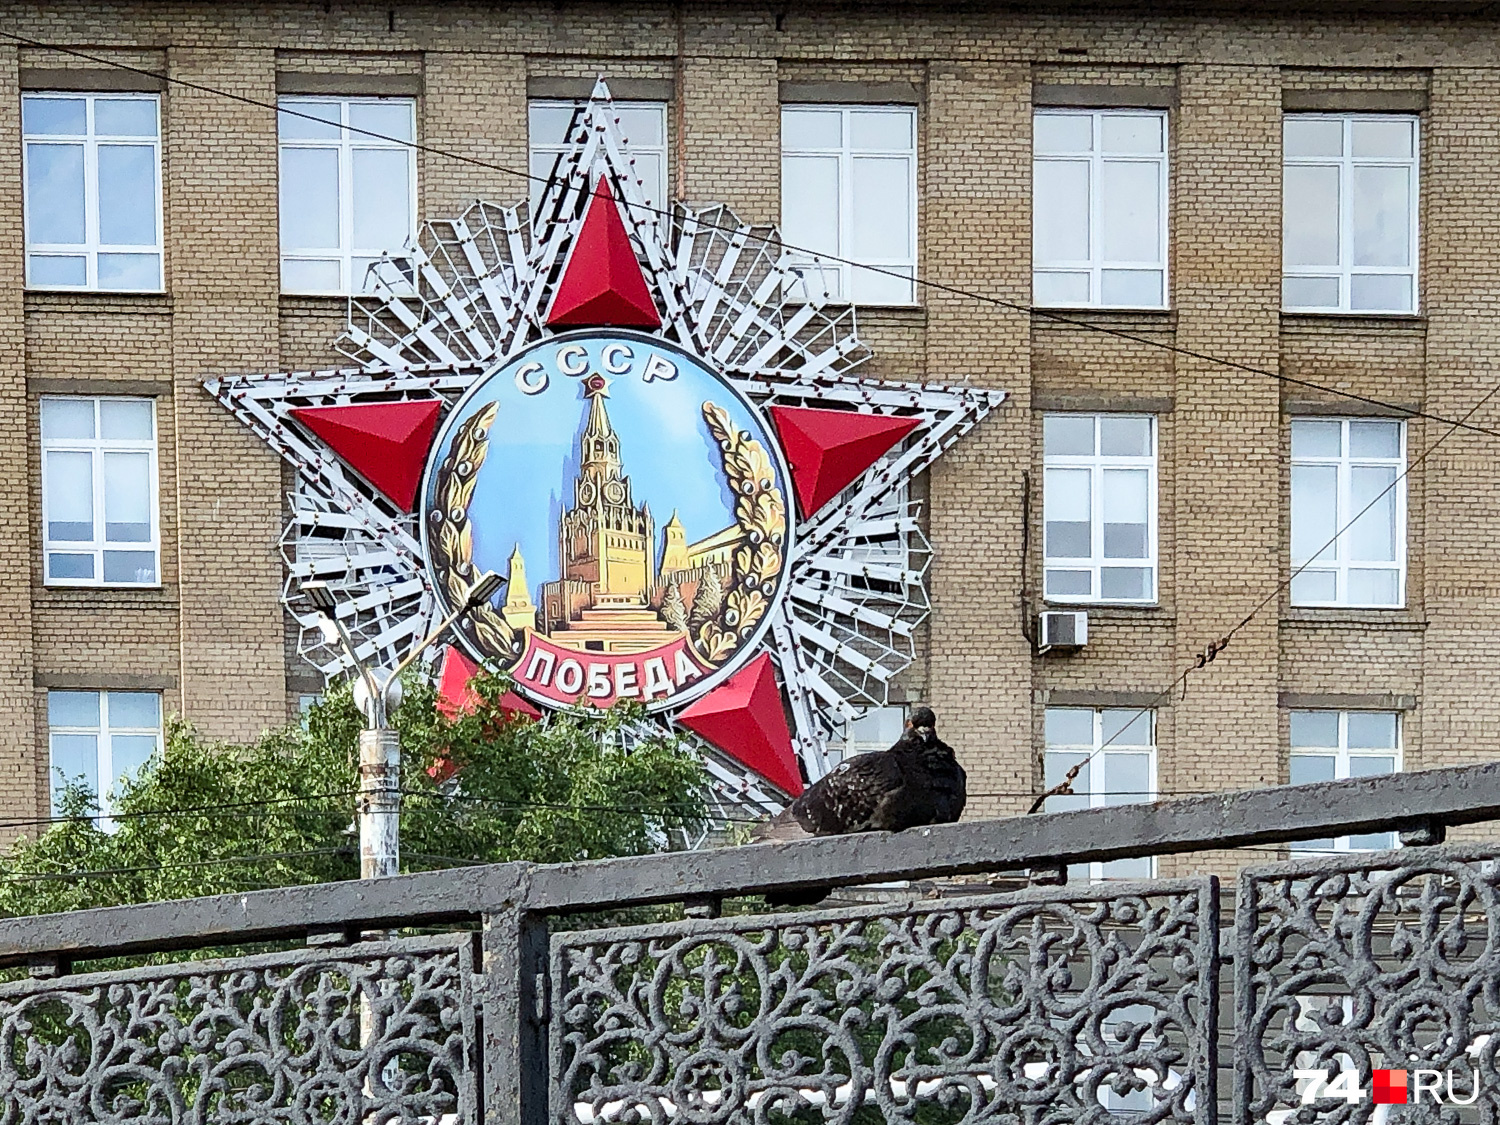 Не знаю, кому пришла в голову идея повесить орден Победы на здание Теплотеха, но эта звезда стала одним из символов Челябинска